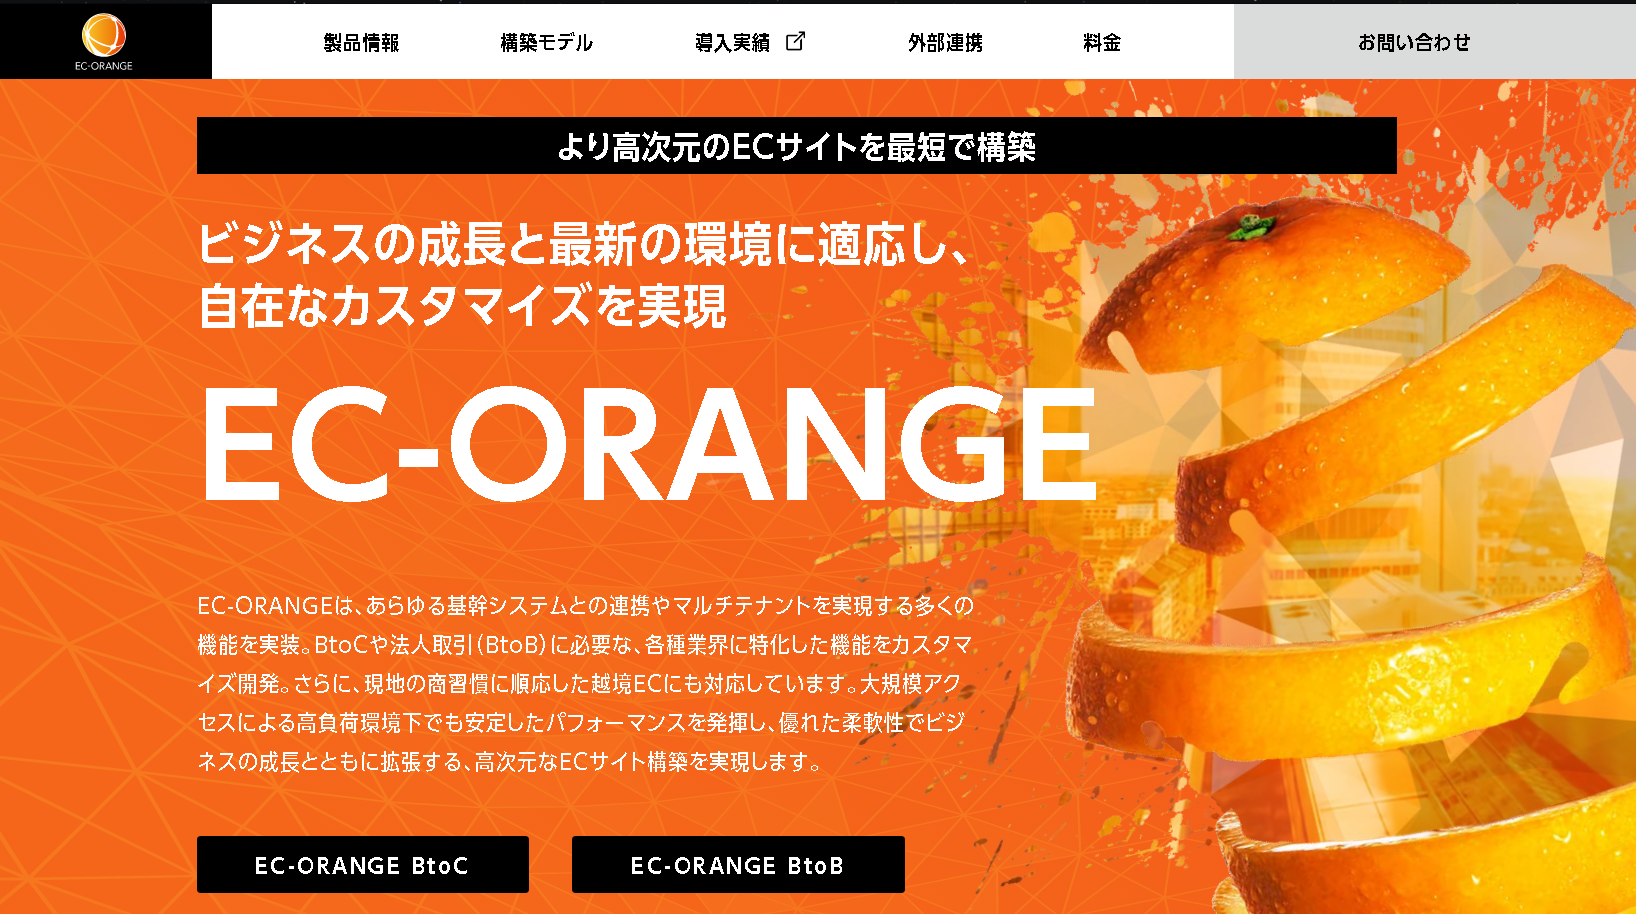 株式会社エスキュービズムのEC-Orangeサービス